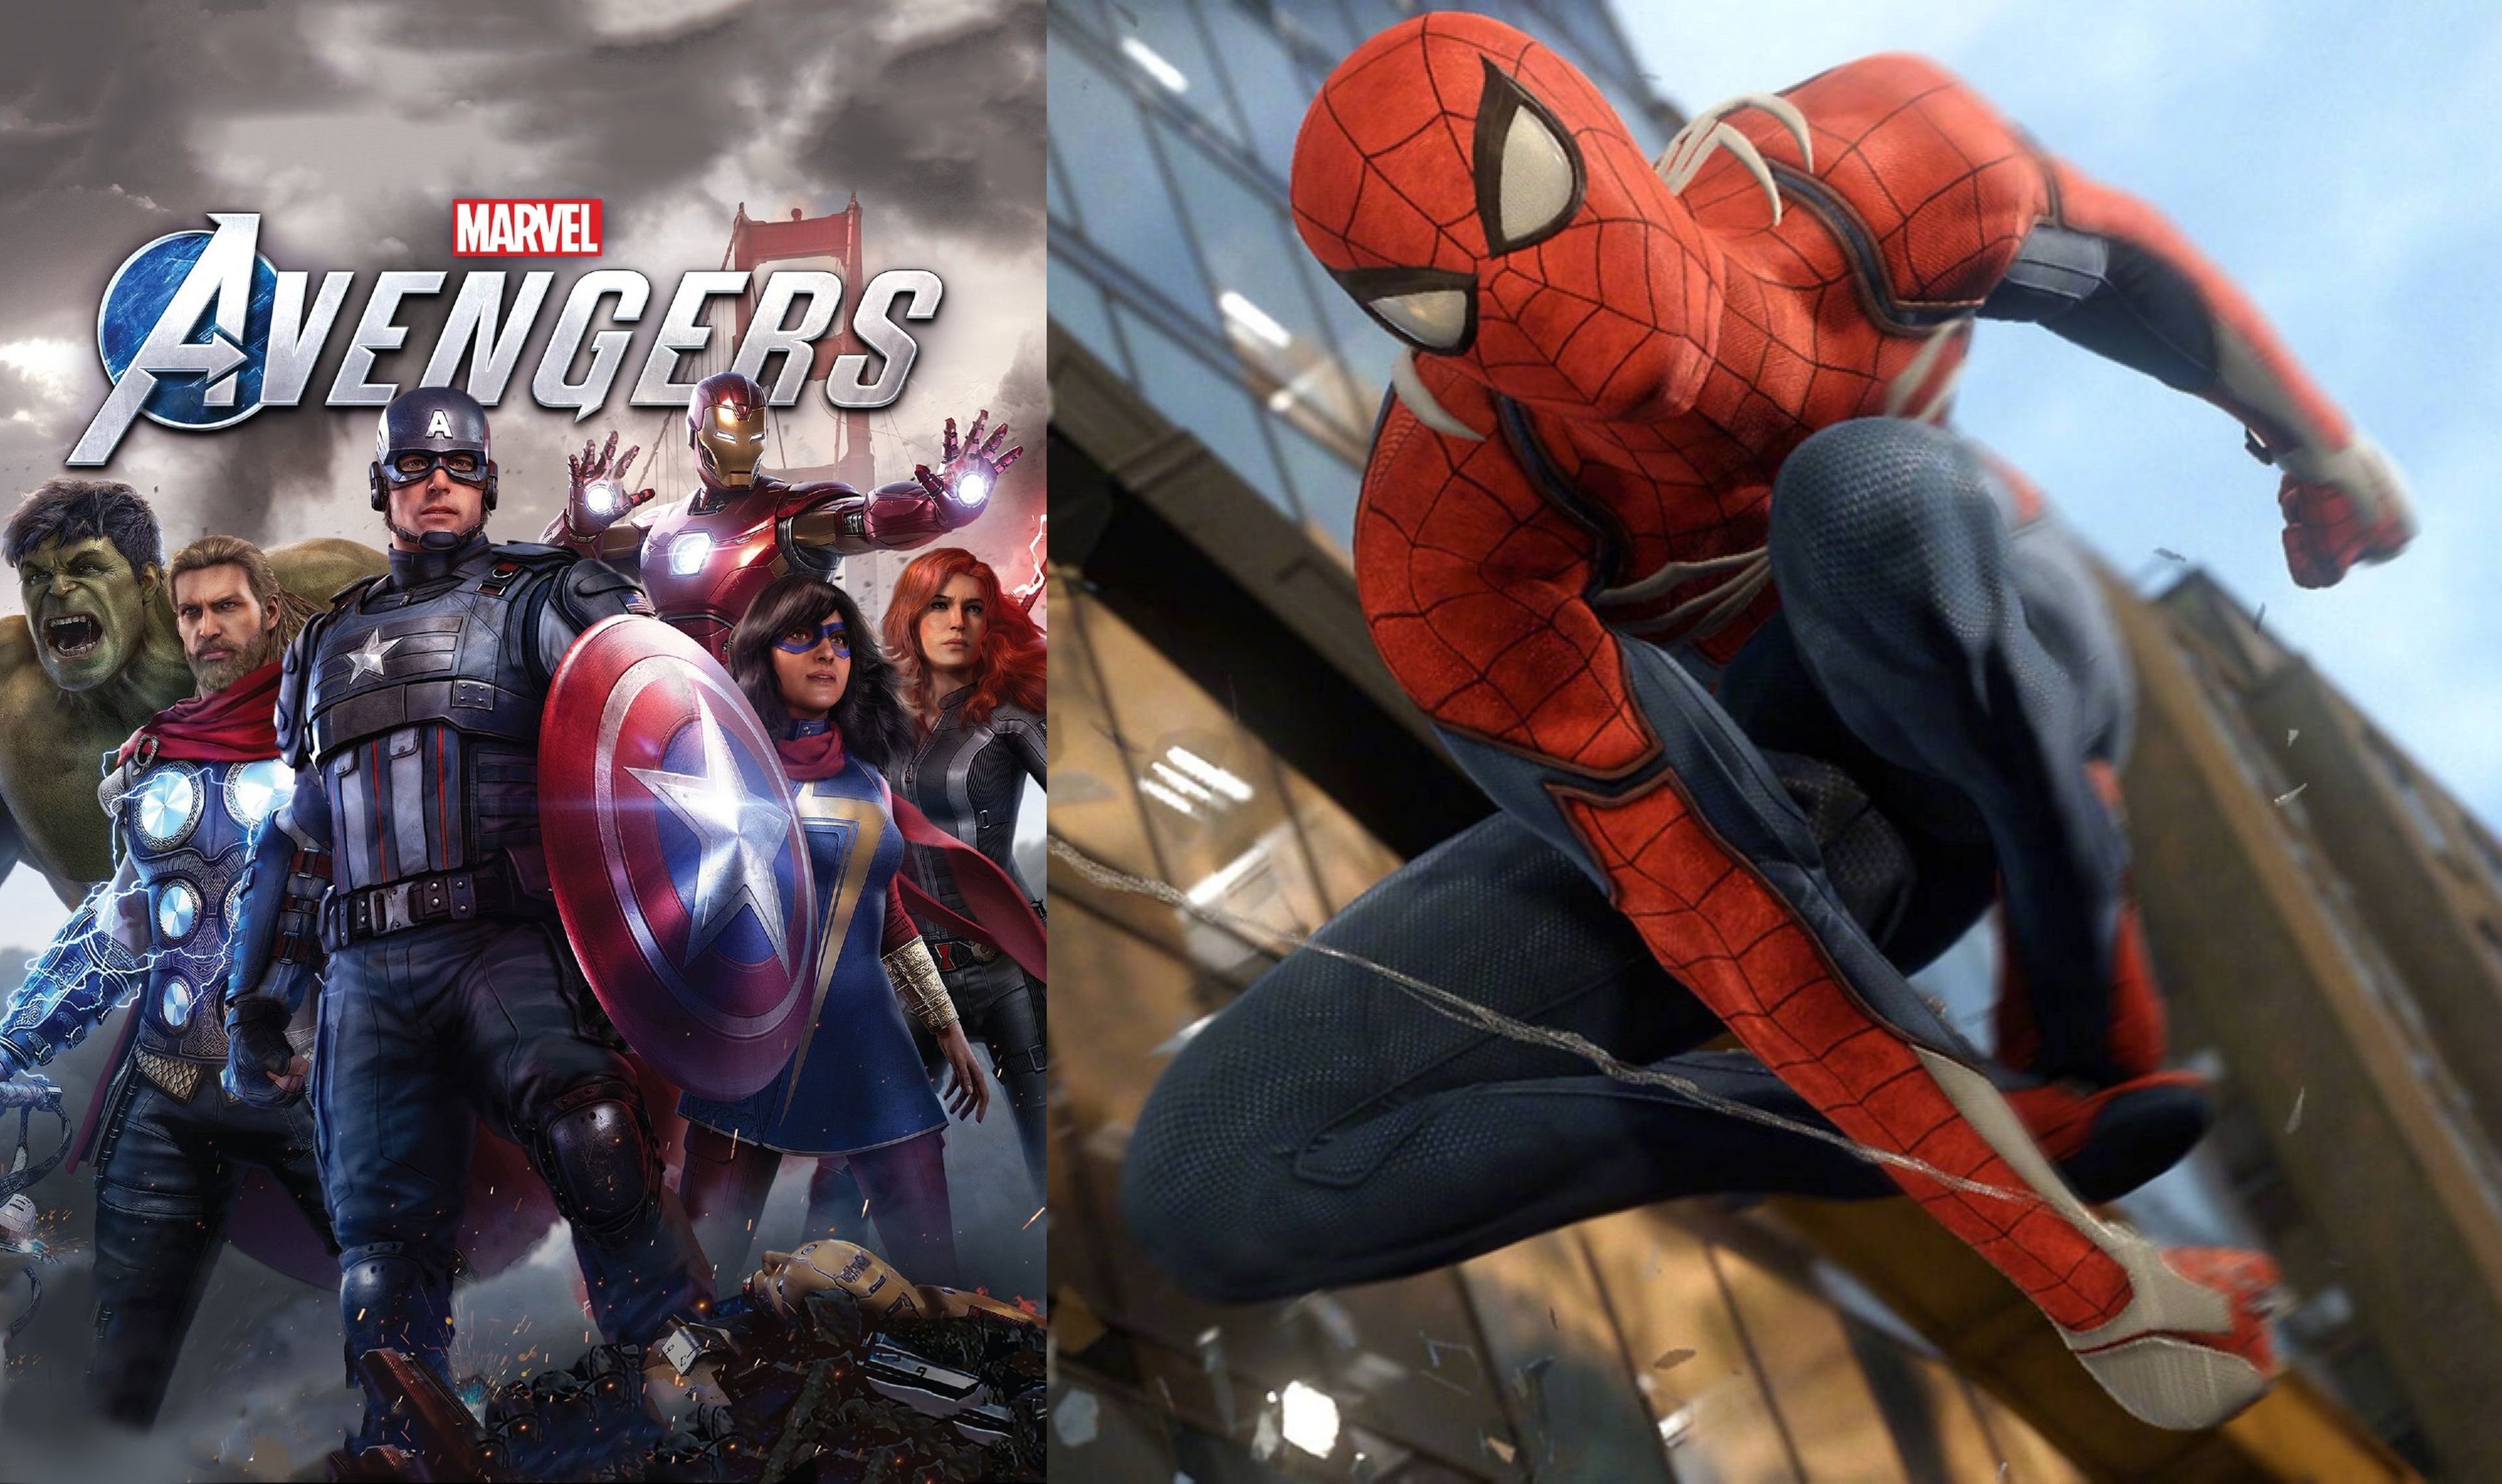 Marvel's Avengers - Spider-Man PS4